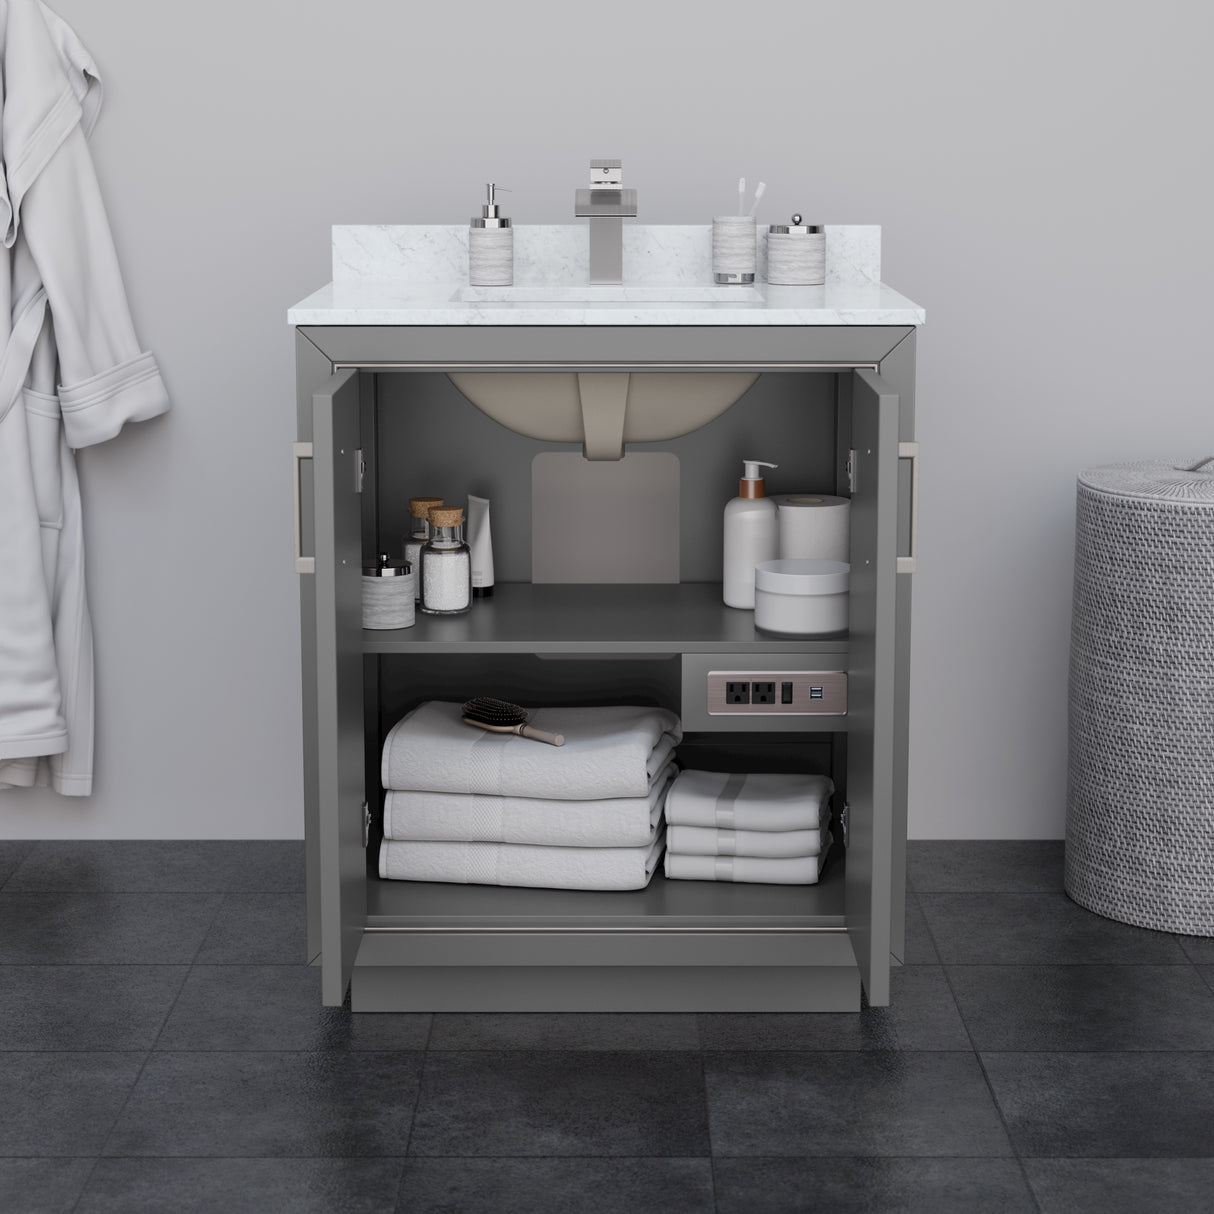 Icon 30 Inch Single Bathroom Vanity in Dark Gray No Countertop No Sink Brushed Nickel Trim